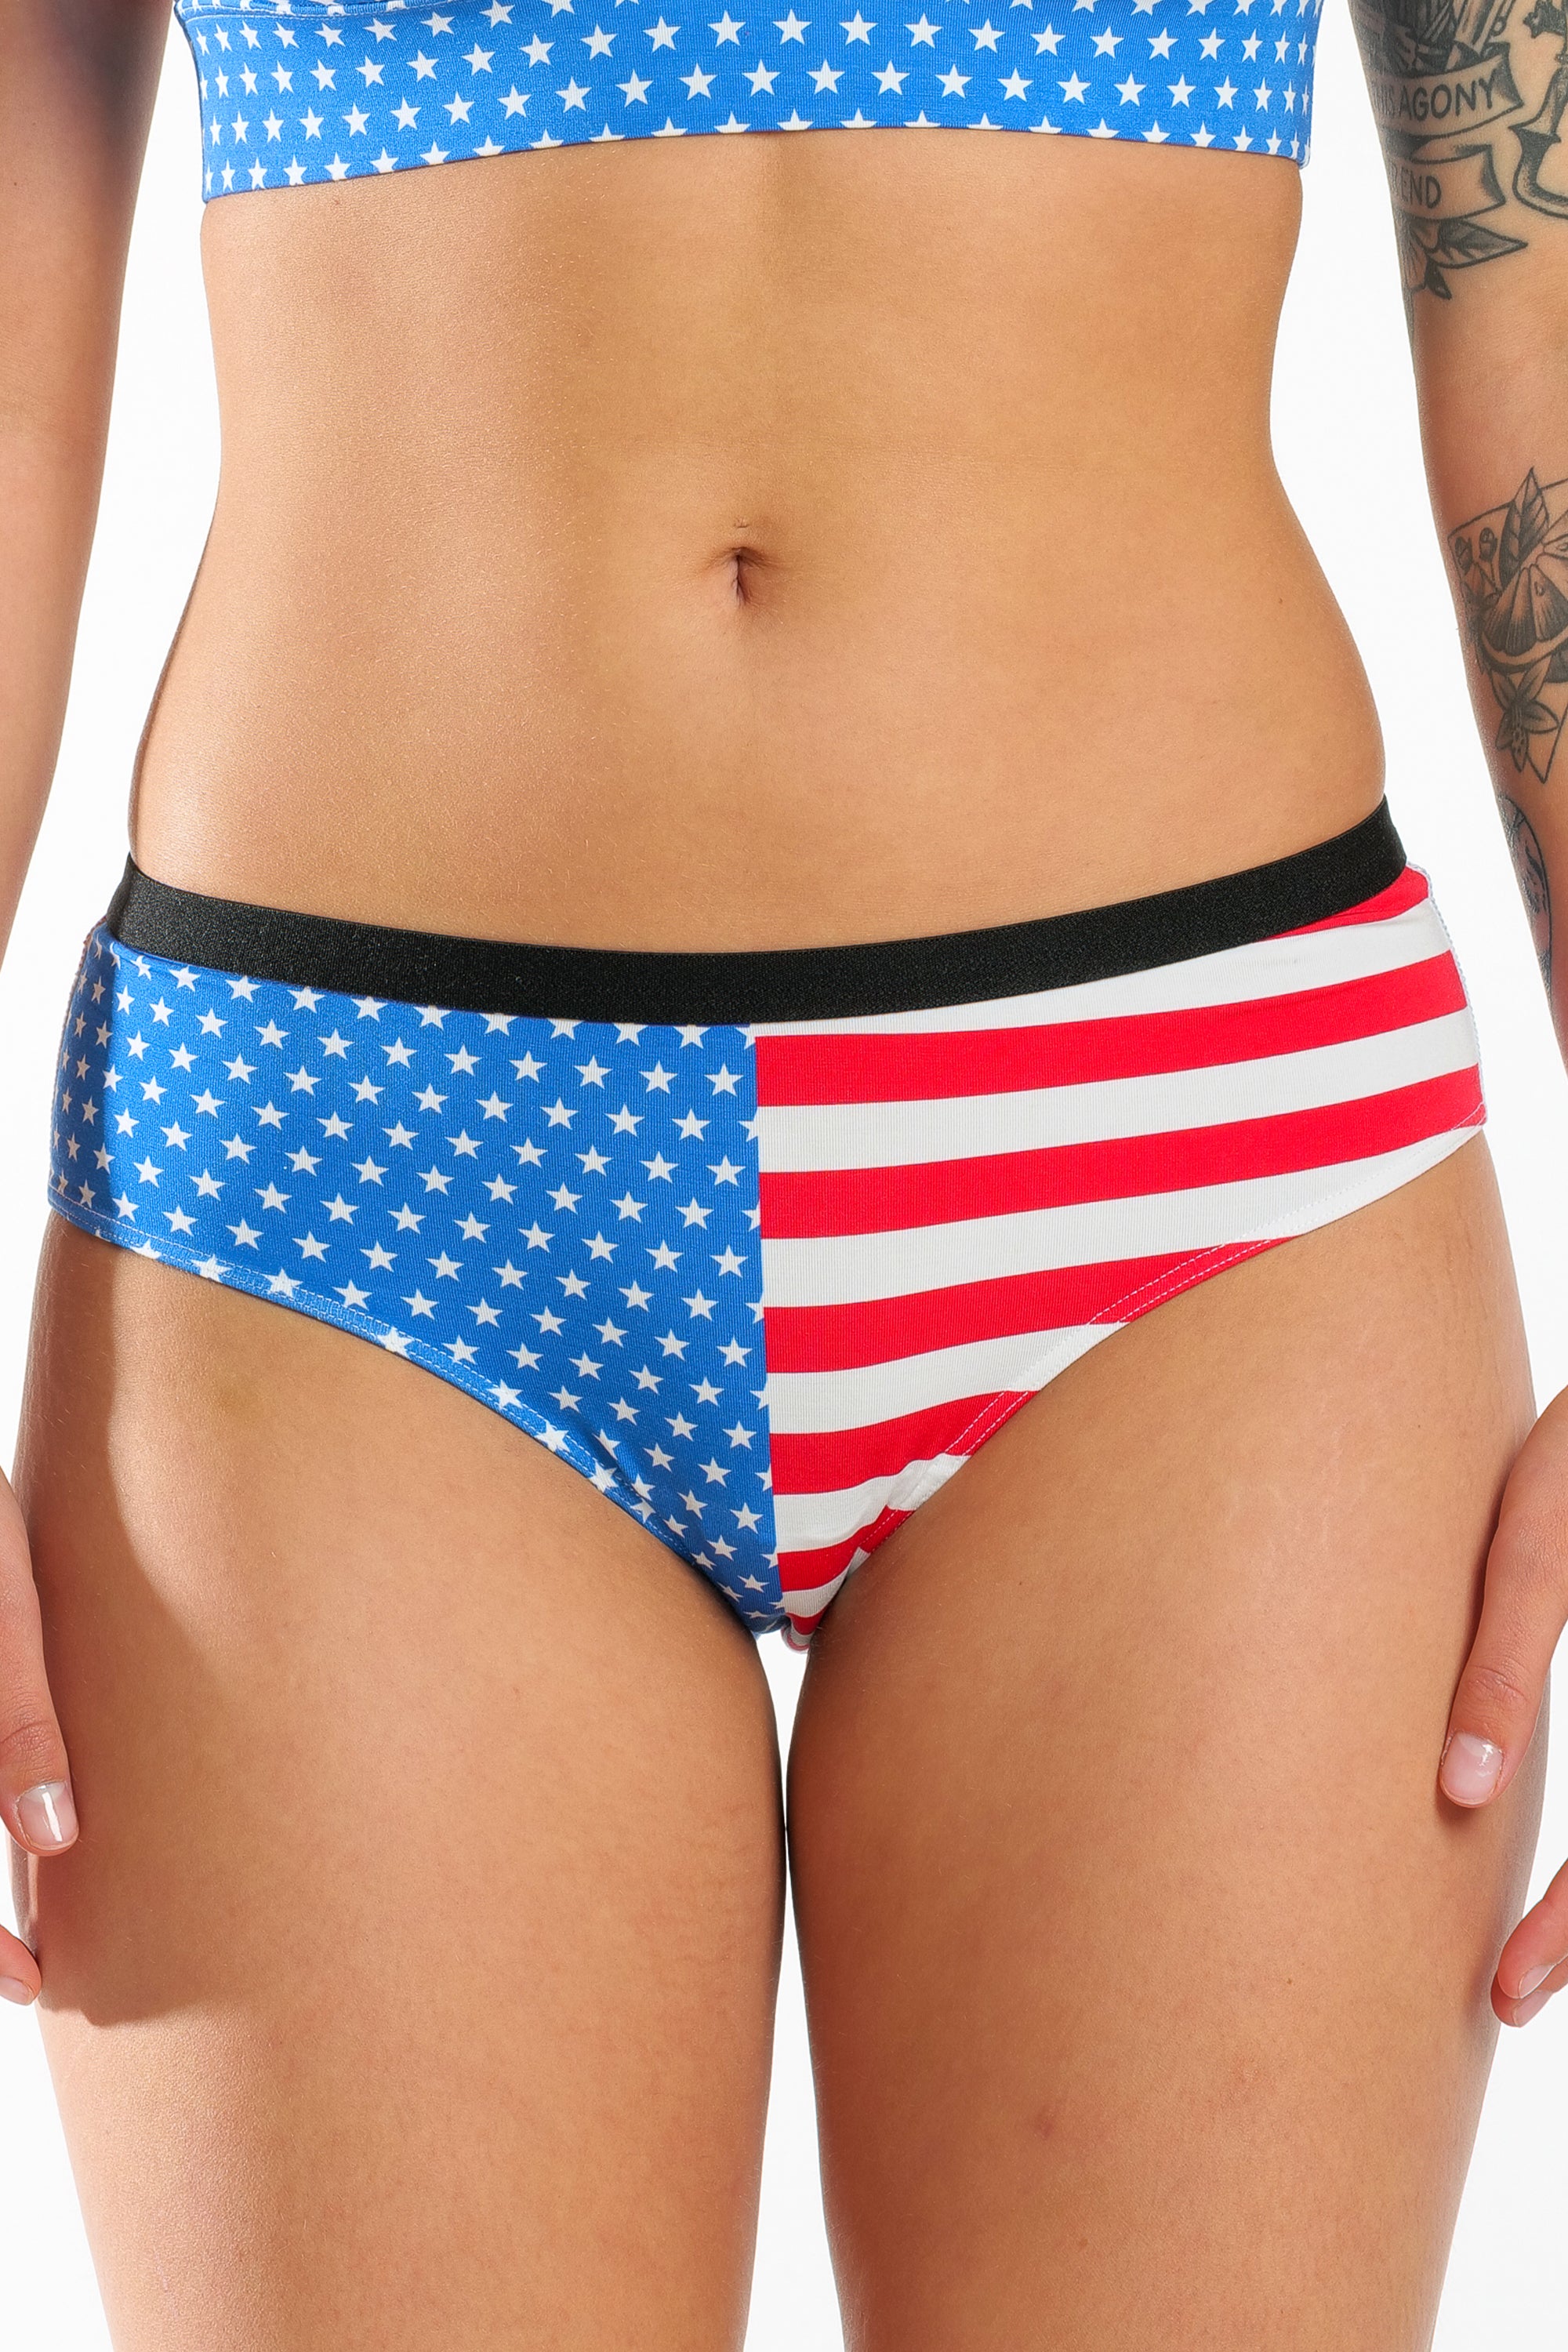 USA Flag Cheeky Panties